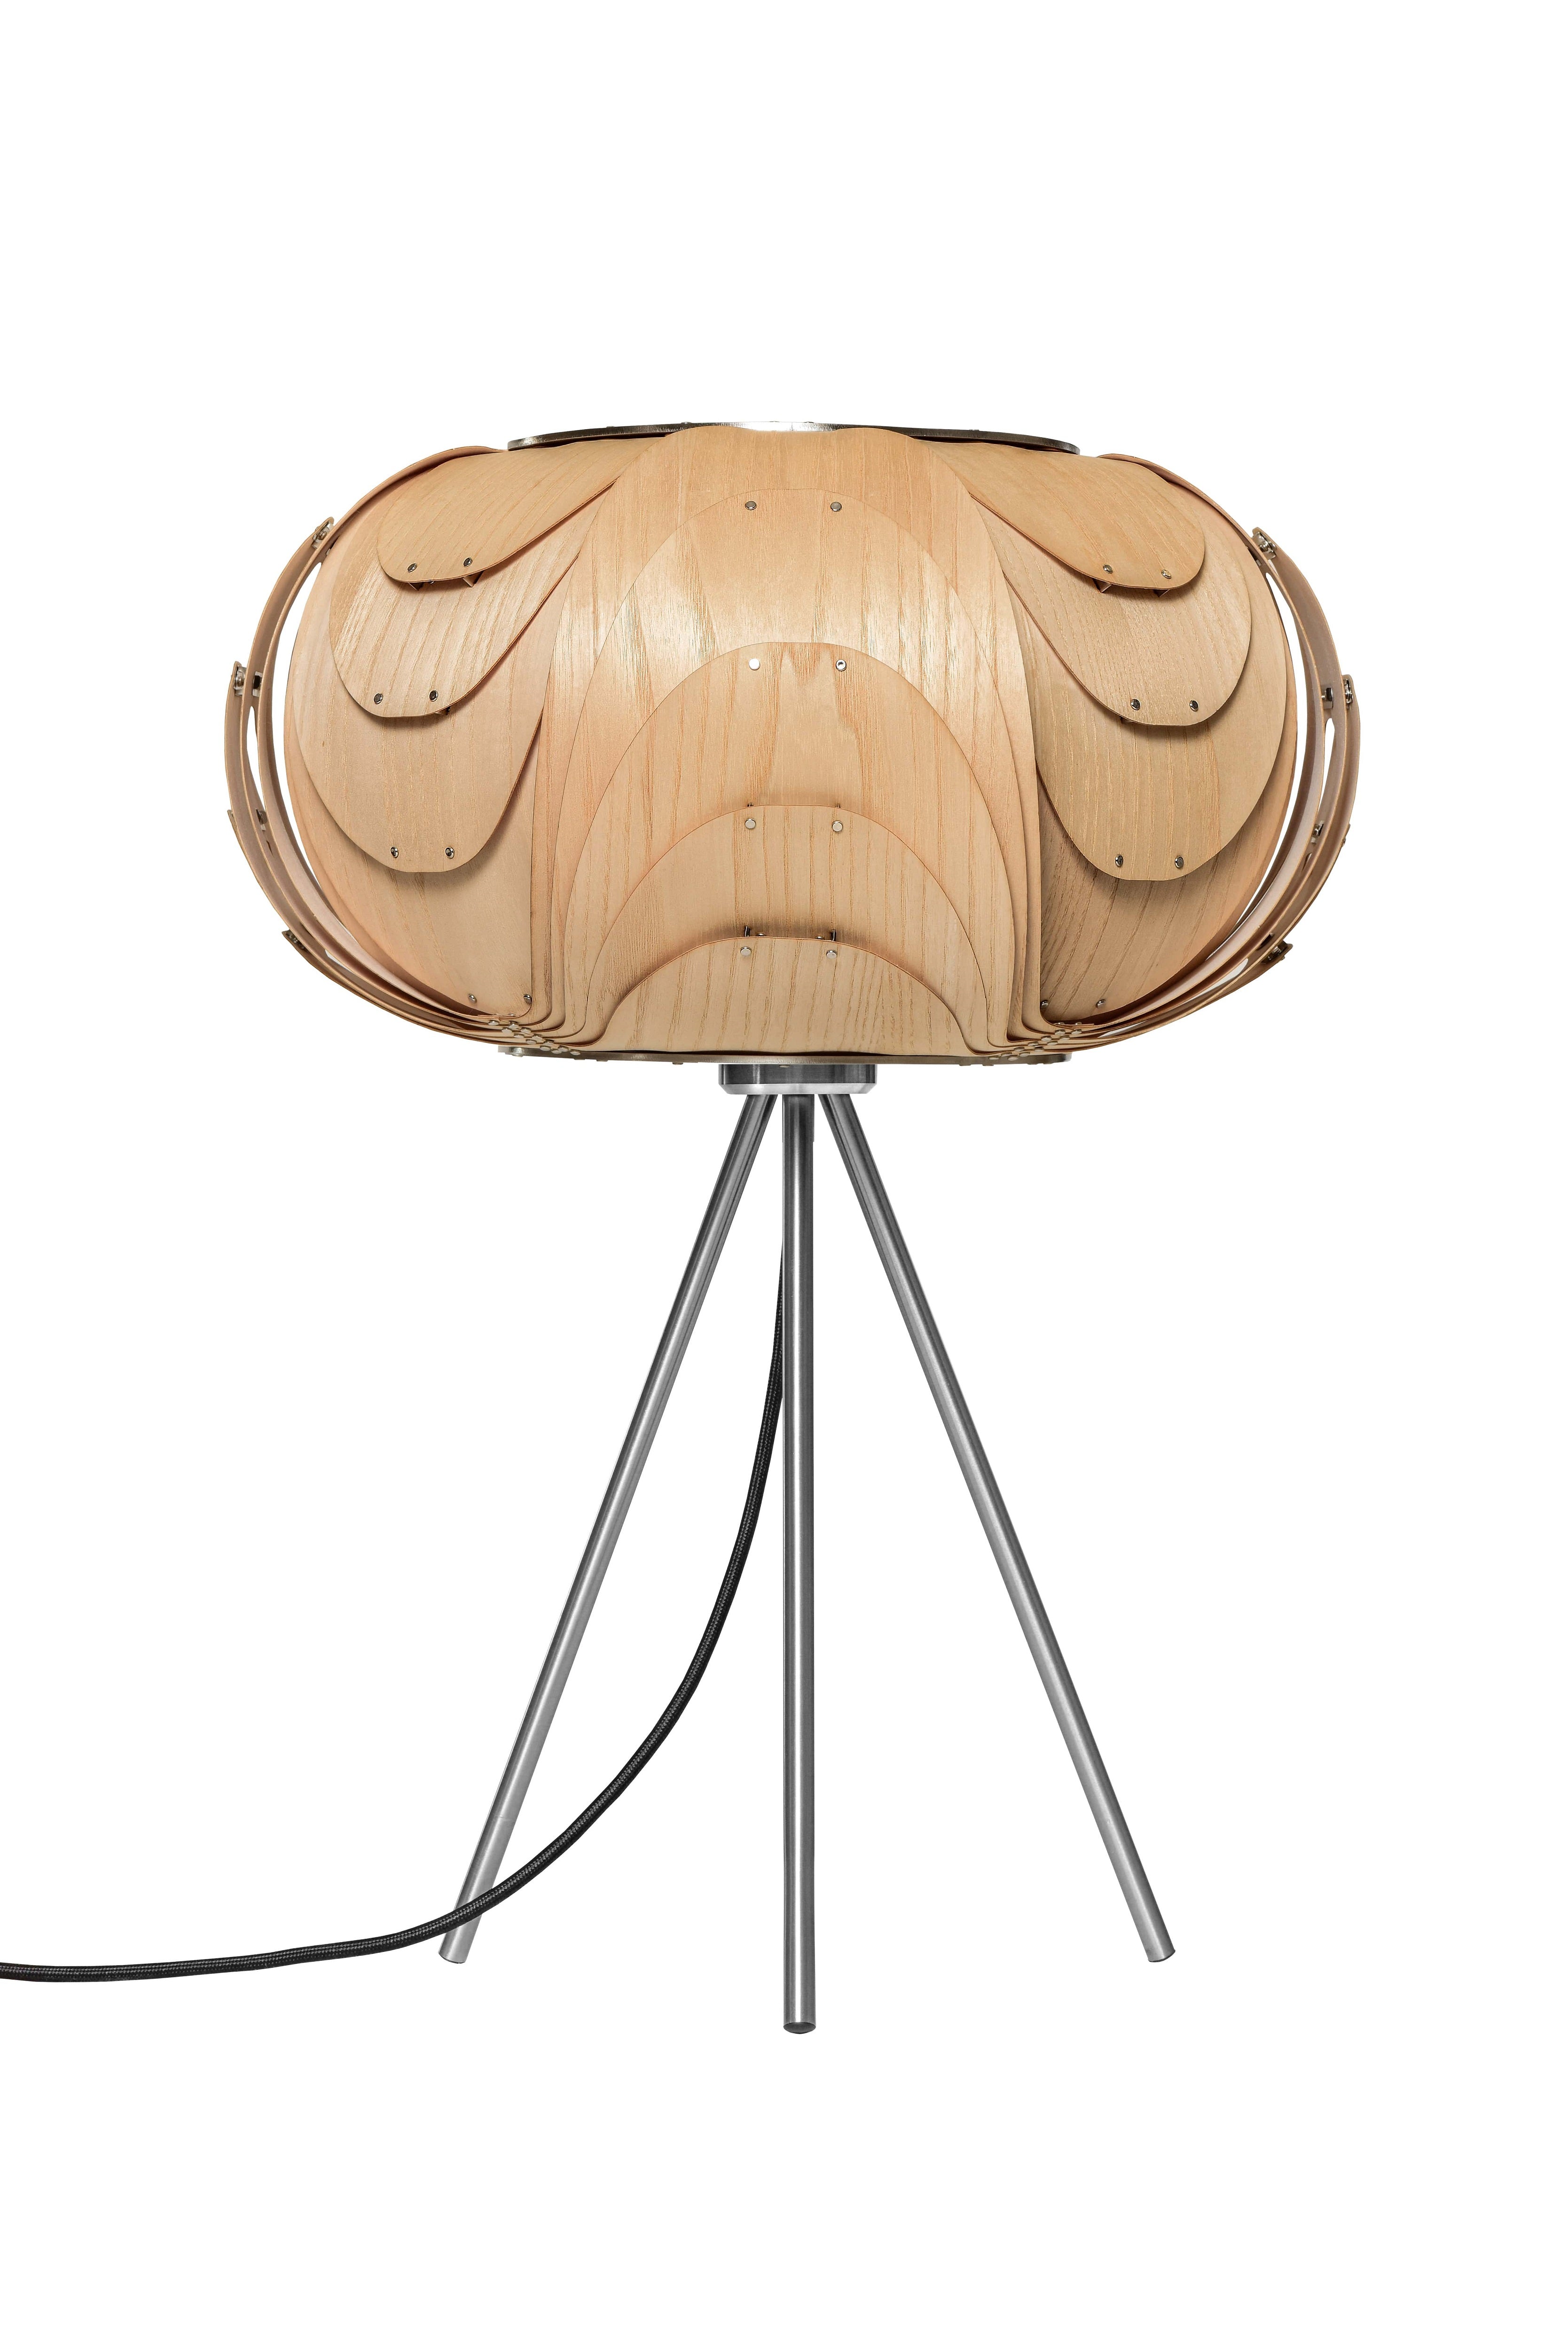 Moderne sehr elegante Holz Tischlampe in Eiche natur mit einem Lampenfuß aus gebürstetem Edelstahl